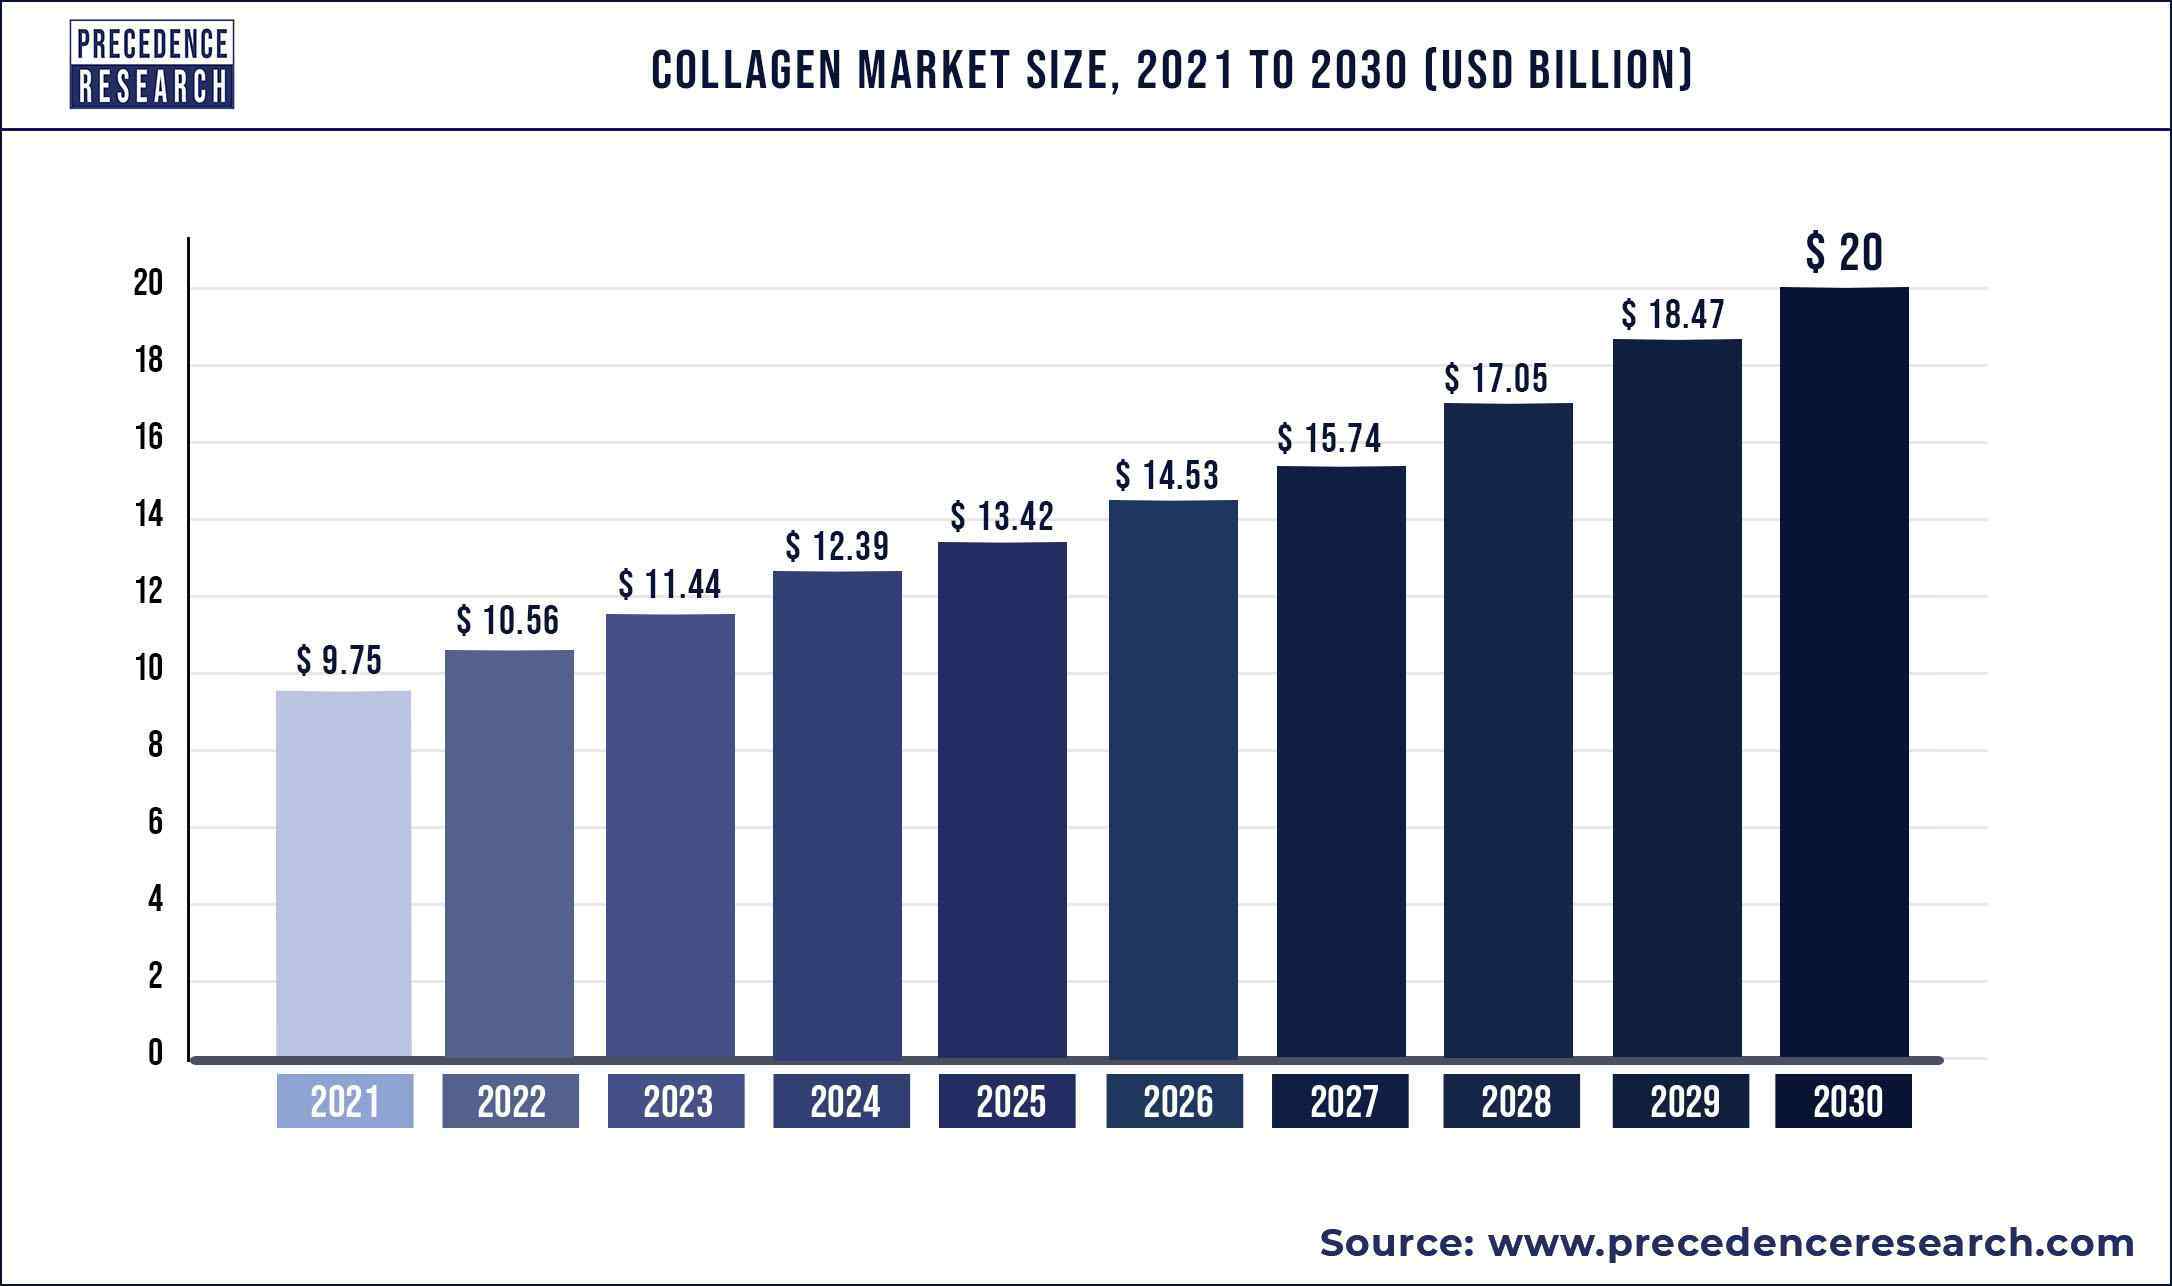 Collagen Market Size 2021 to 2030